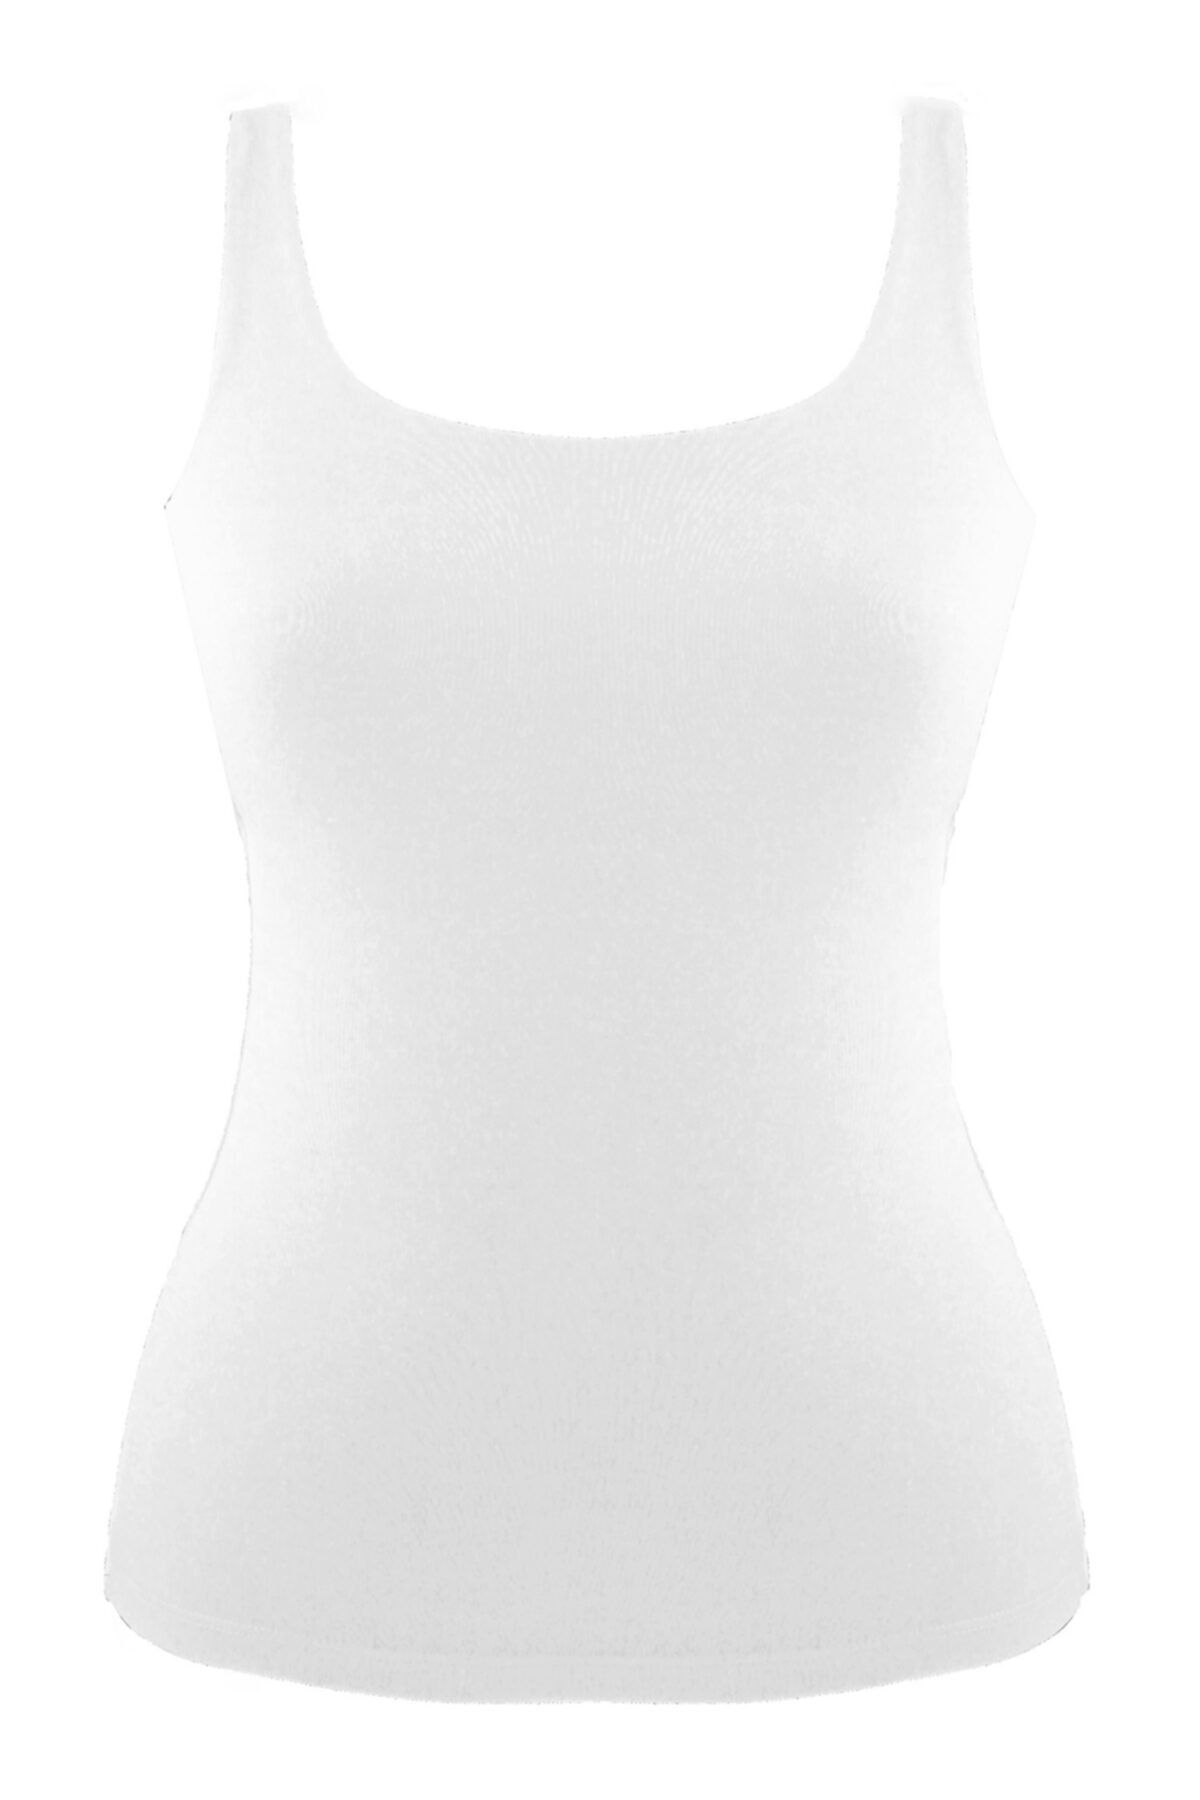 Magic Form Kadın Penye Kumaşlı Dar Askılı Uzun Atlet Mf2021